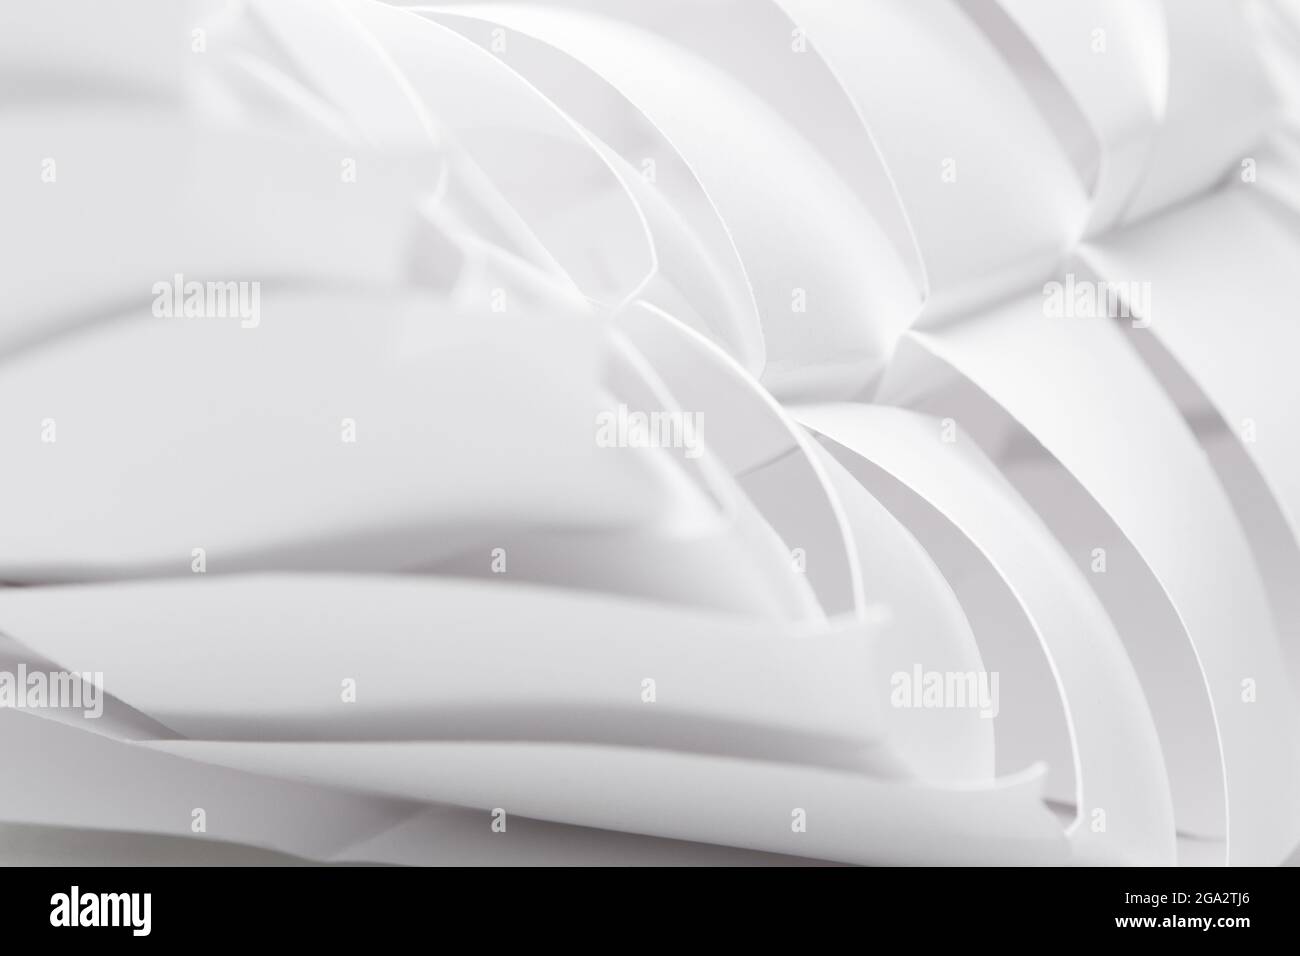 Modèle d'insecte de papier blanc, avec segments, courbes et lignes parallèles. Beauté dans la nature, savoir-faire. Banque D'Images